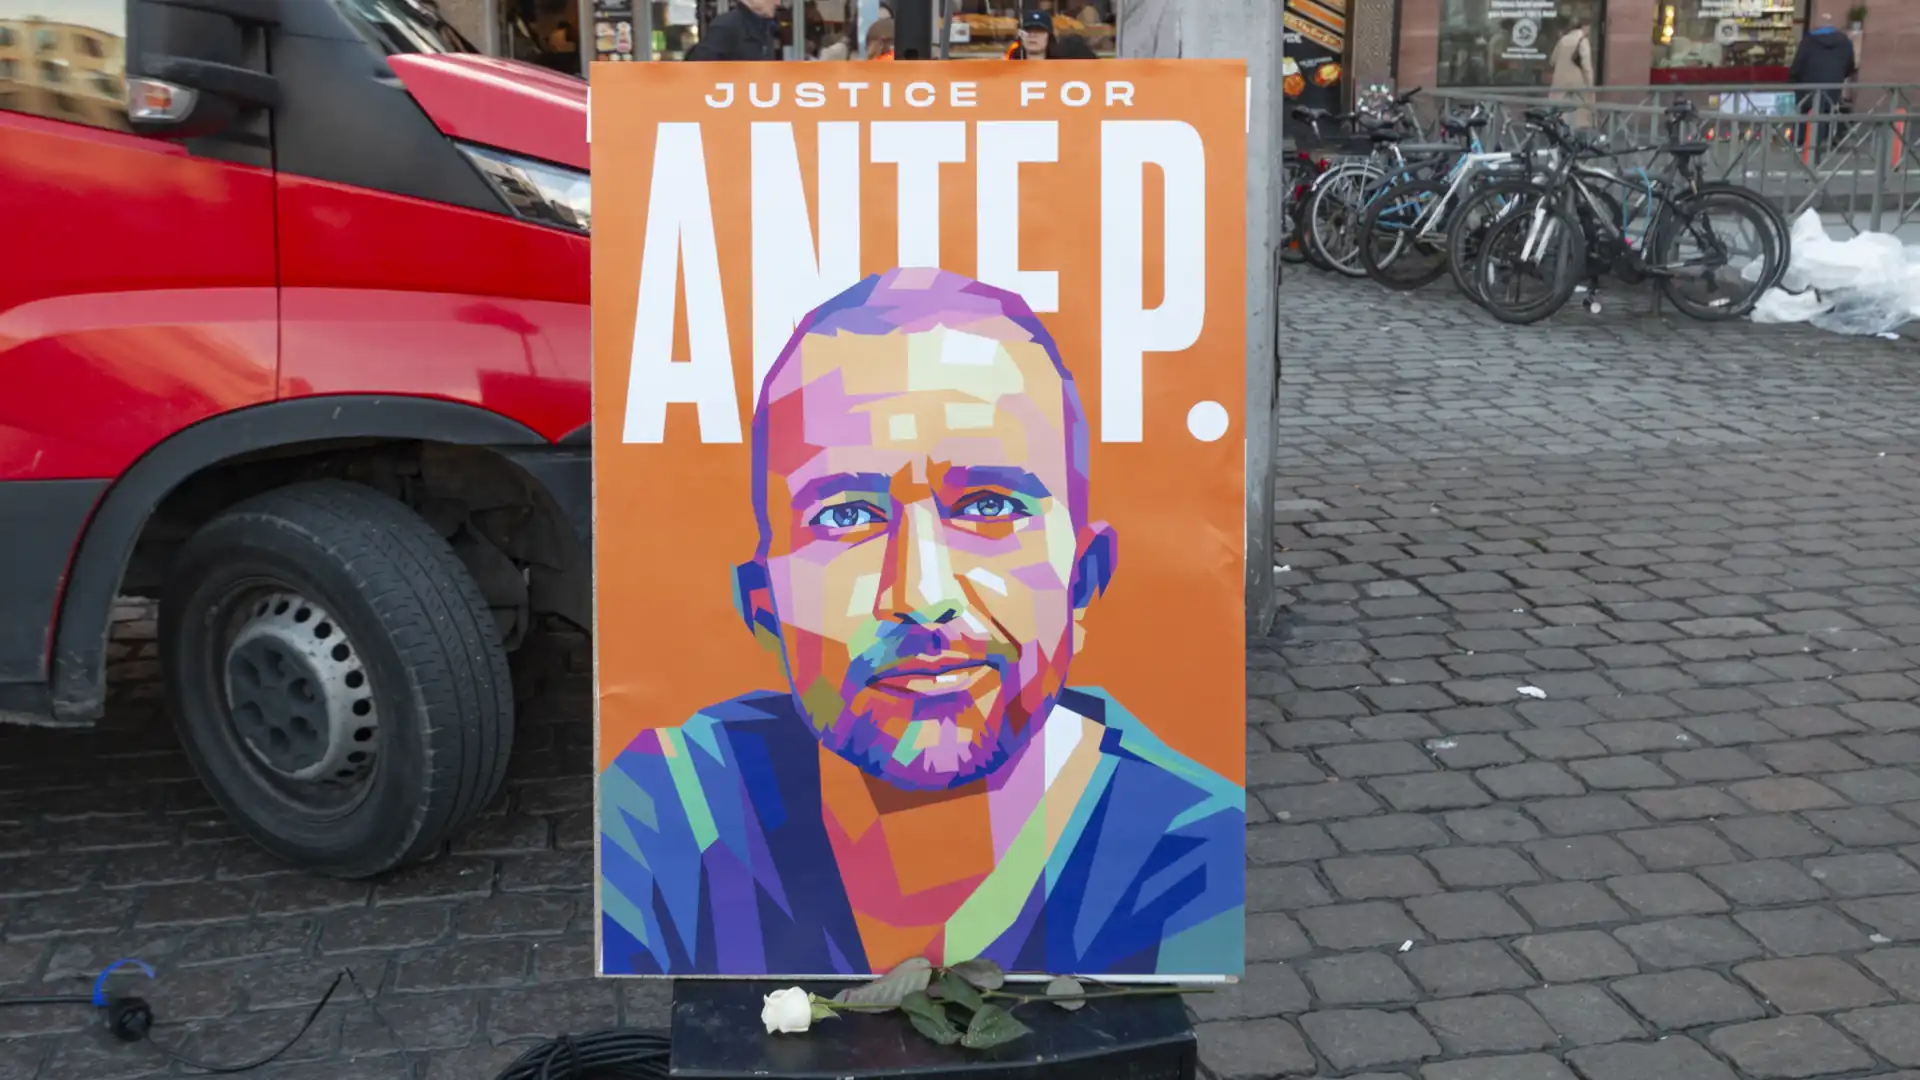 Ein Plakat mit der Aufruf Justice for Ante P. Das Gesicht von Ante P. ist aus bunten 3D-Mosaiken zusammengesetzt. Schrift ist weiß. Hintergrund ist orange. Hinter dem Plakat ist links eine Motorhaube und Rechts Fahrräder zu sehen.